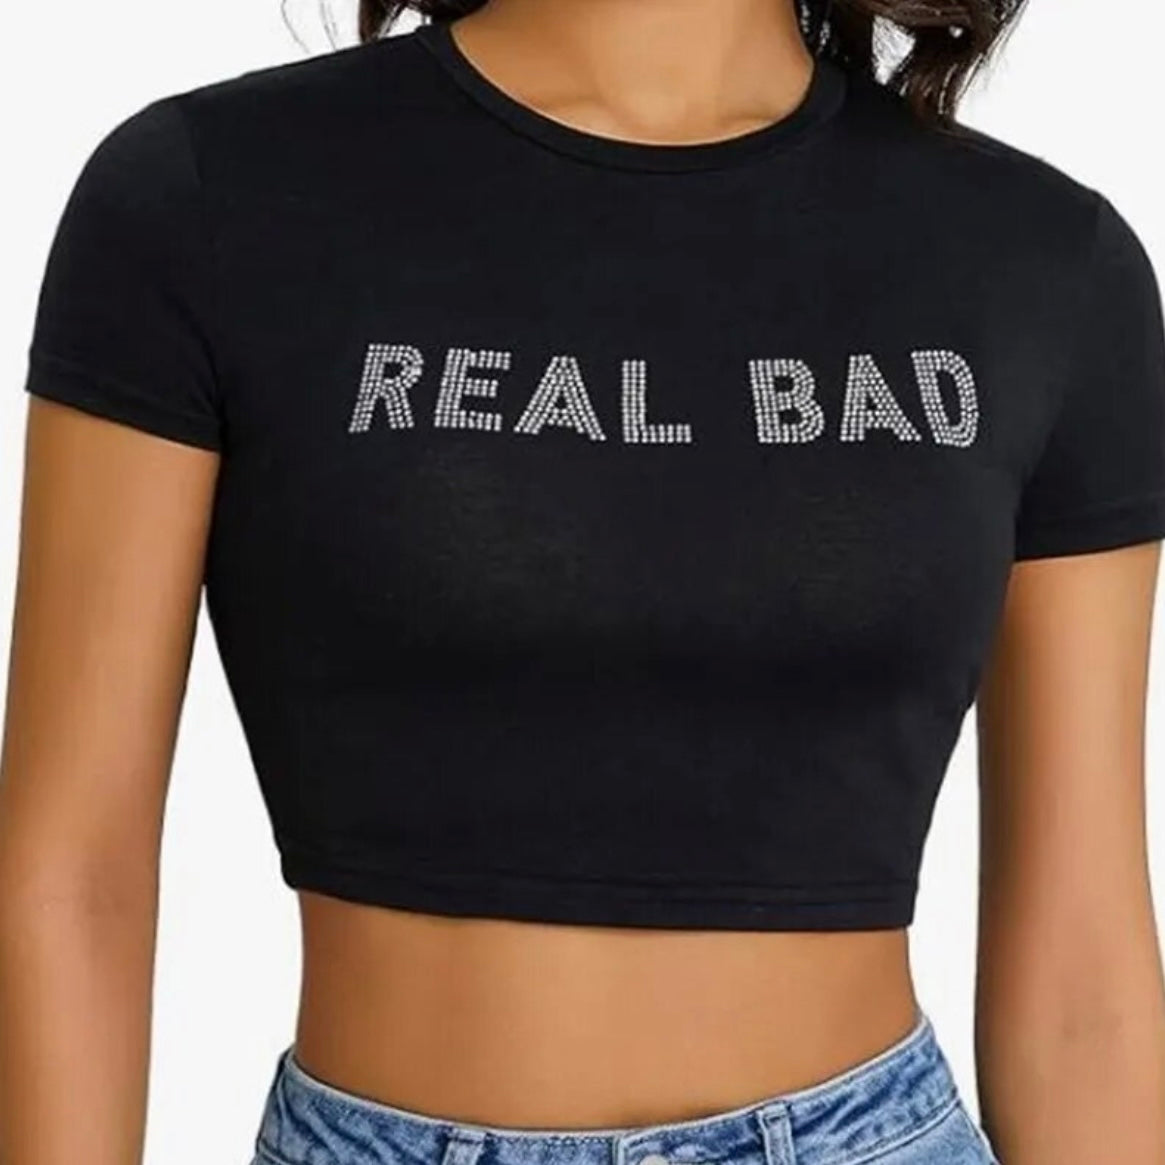 REAL Bad T-Shirt